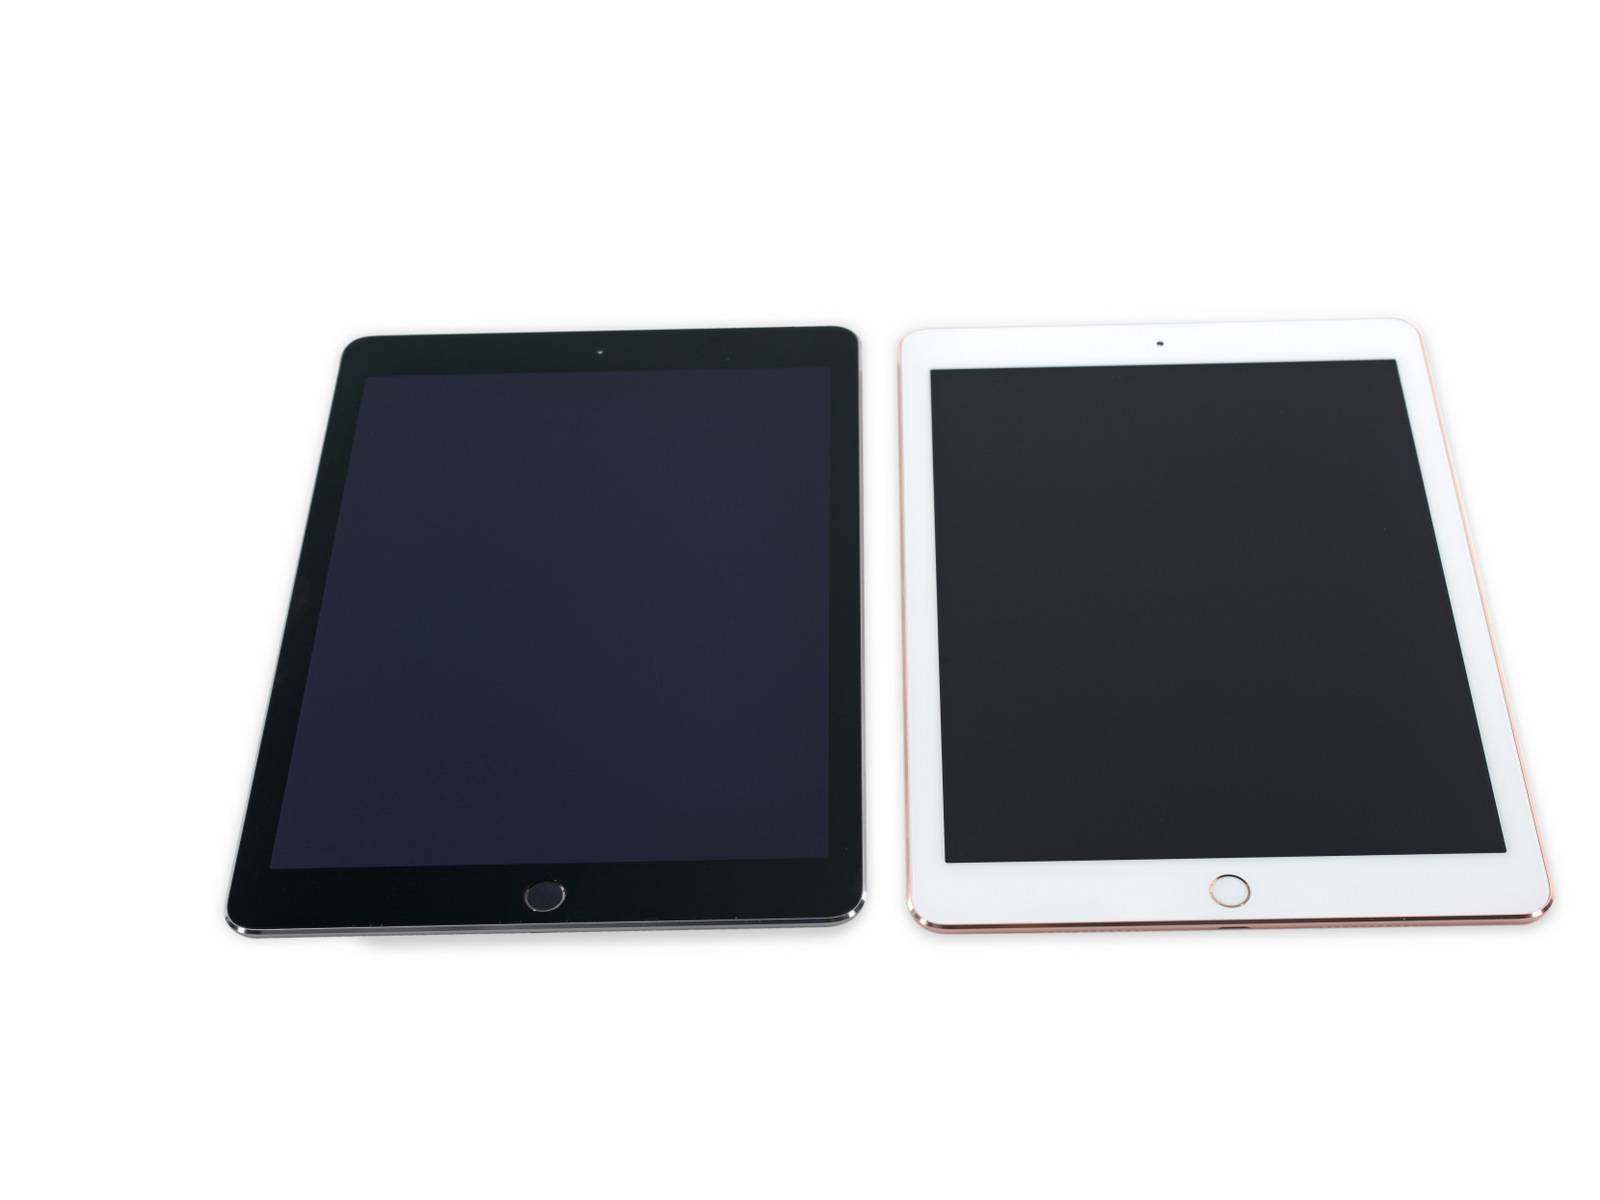 9.7 英寸 iPad Pro 拆解:除了 2GB RAM,它比 iP